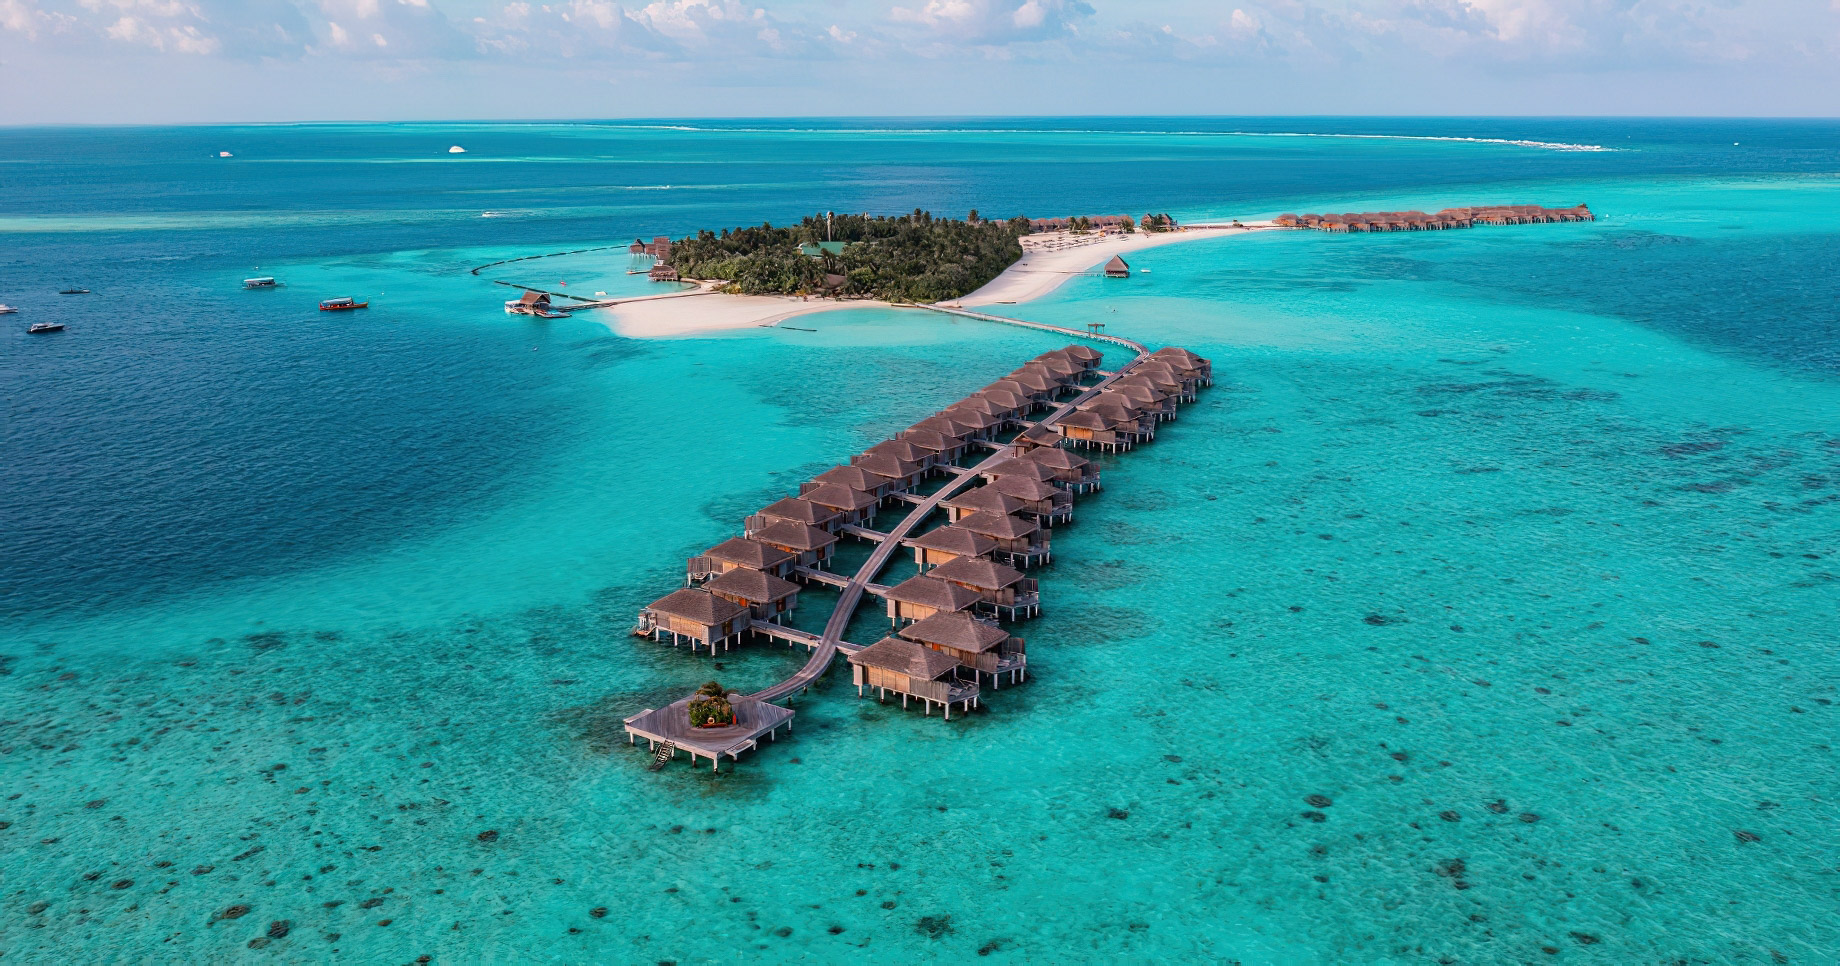 Constance Moofushi Resort - South Ari Atoll, Maldives - Water Villas Aerial View